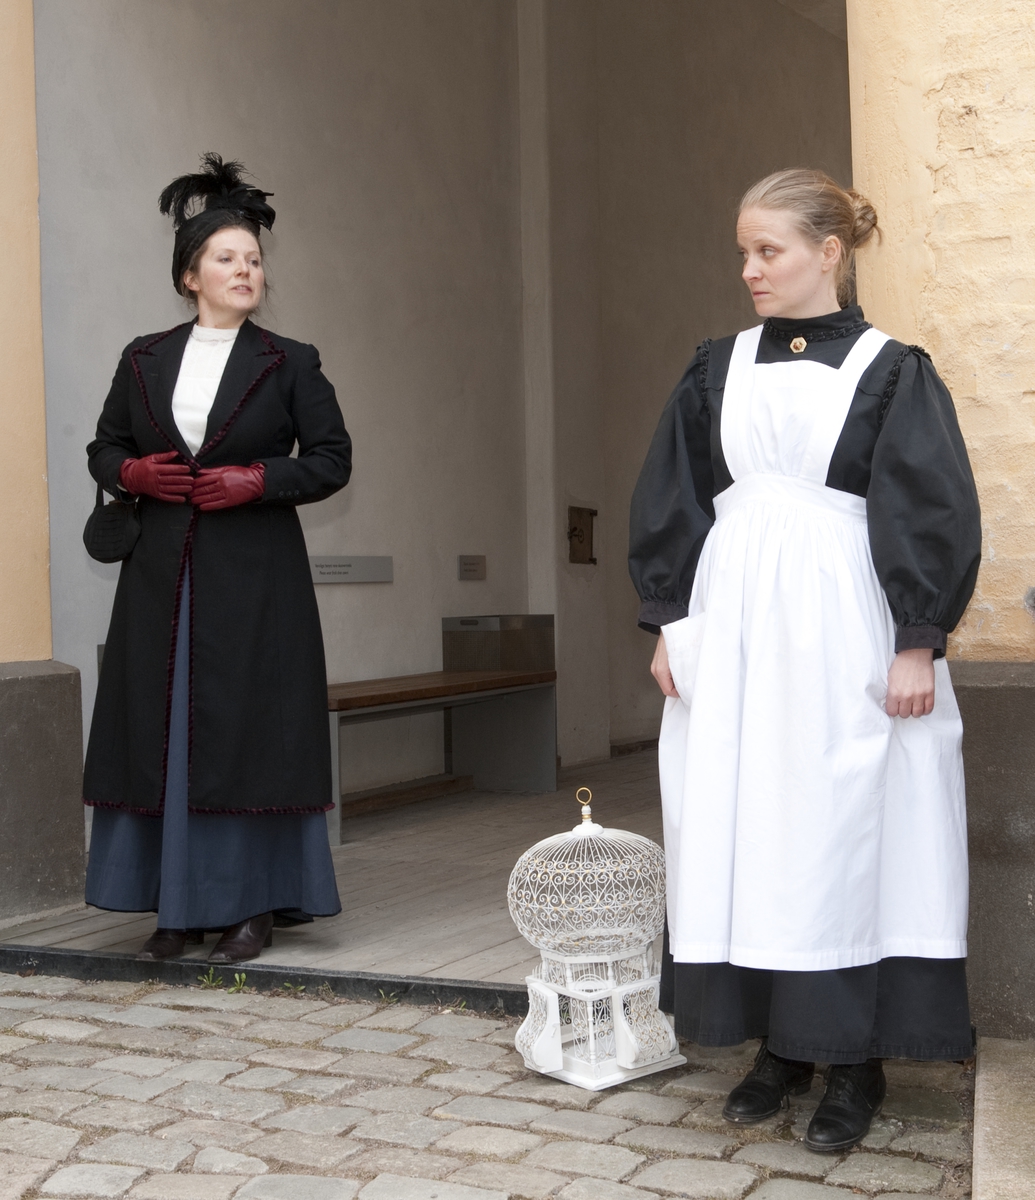 Vandreteateret "Kvinner i hundre!" ble vist på friluftsmuseet på Norsk folkemuseum april-juni 2013, i forbindelse med stemmerettsjubileet.  På bildet står skuespillerne Kjersti og Miriam Morland utenfor OBOS-gården.